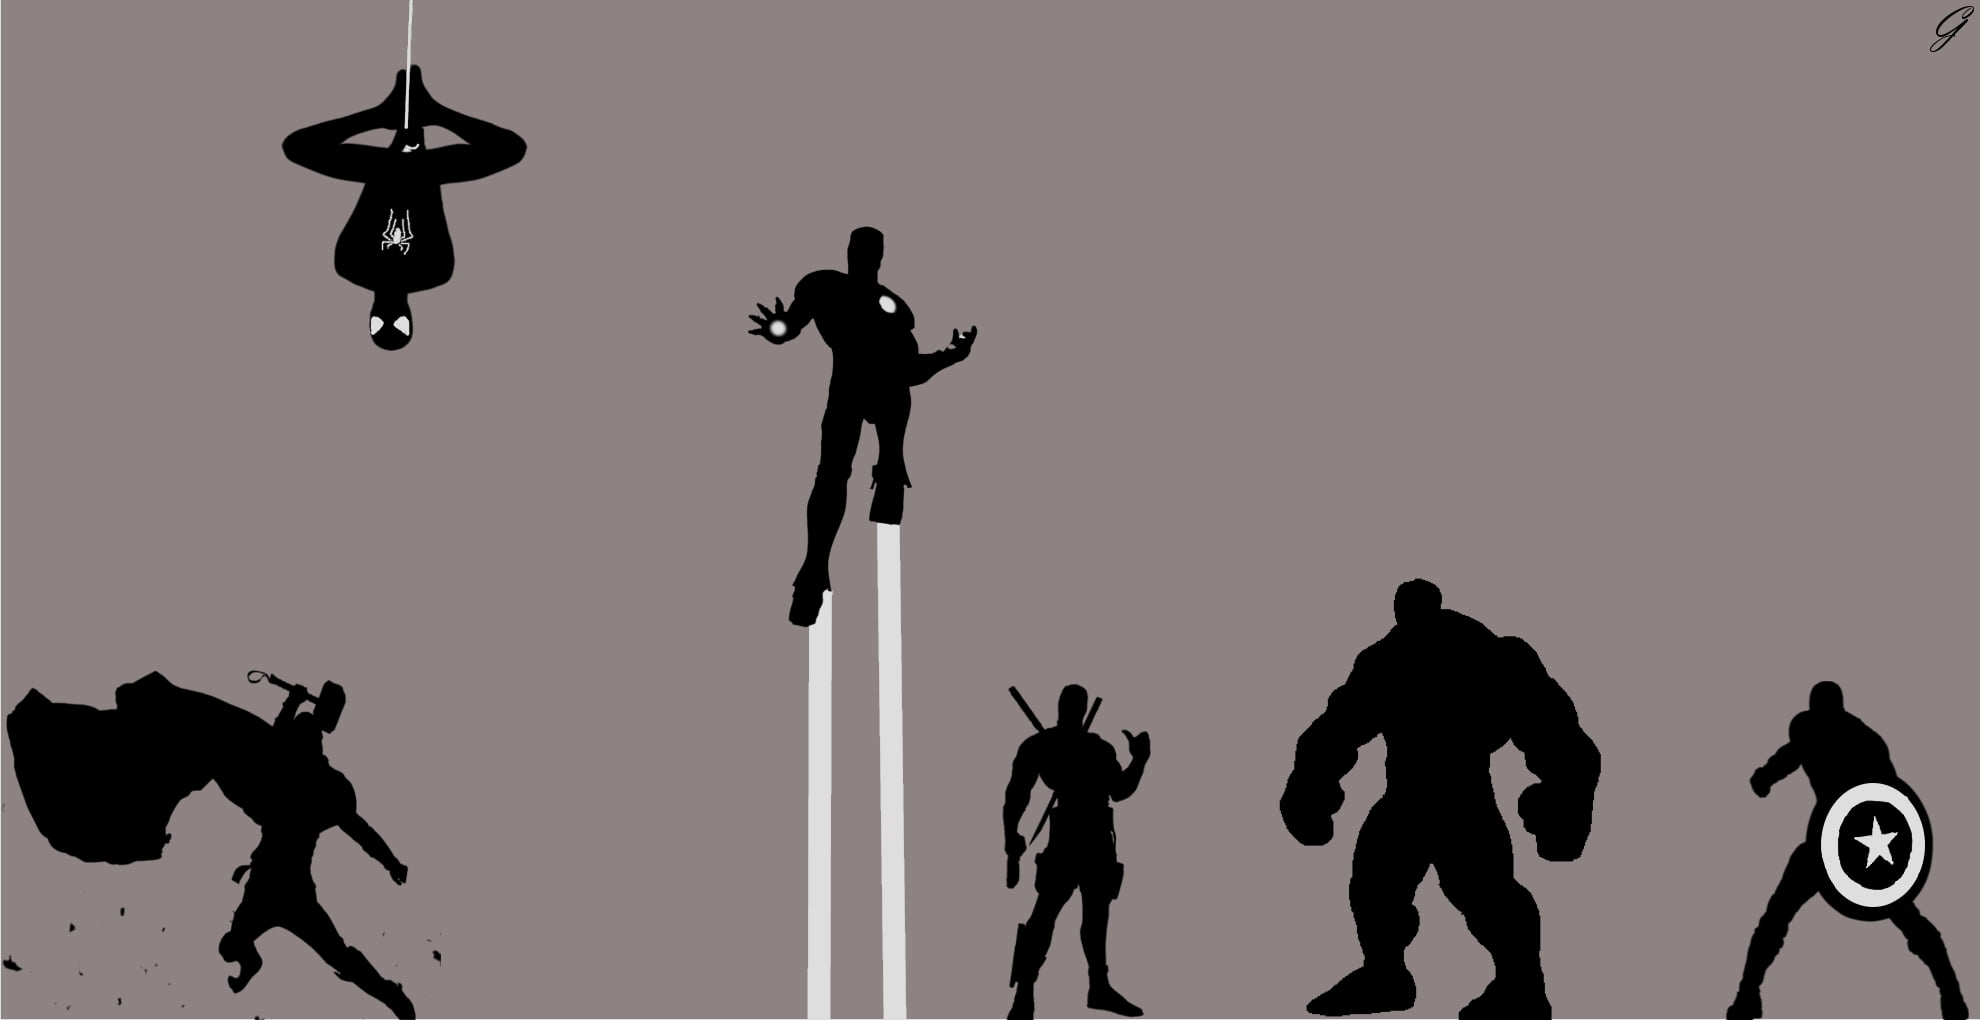 Marvel Avengers digital wallpaper, Thor 2: The Dark World, Avengers: Age of Ultron